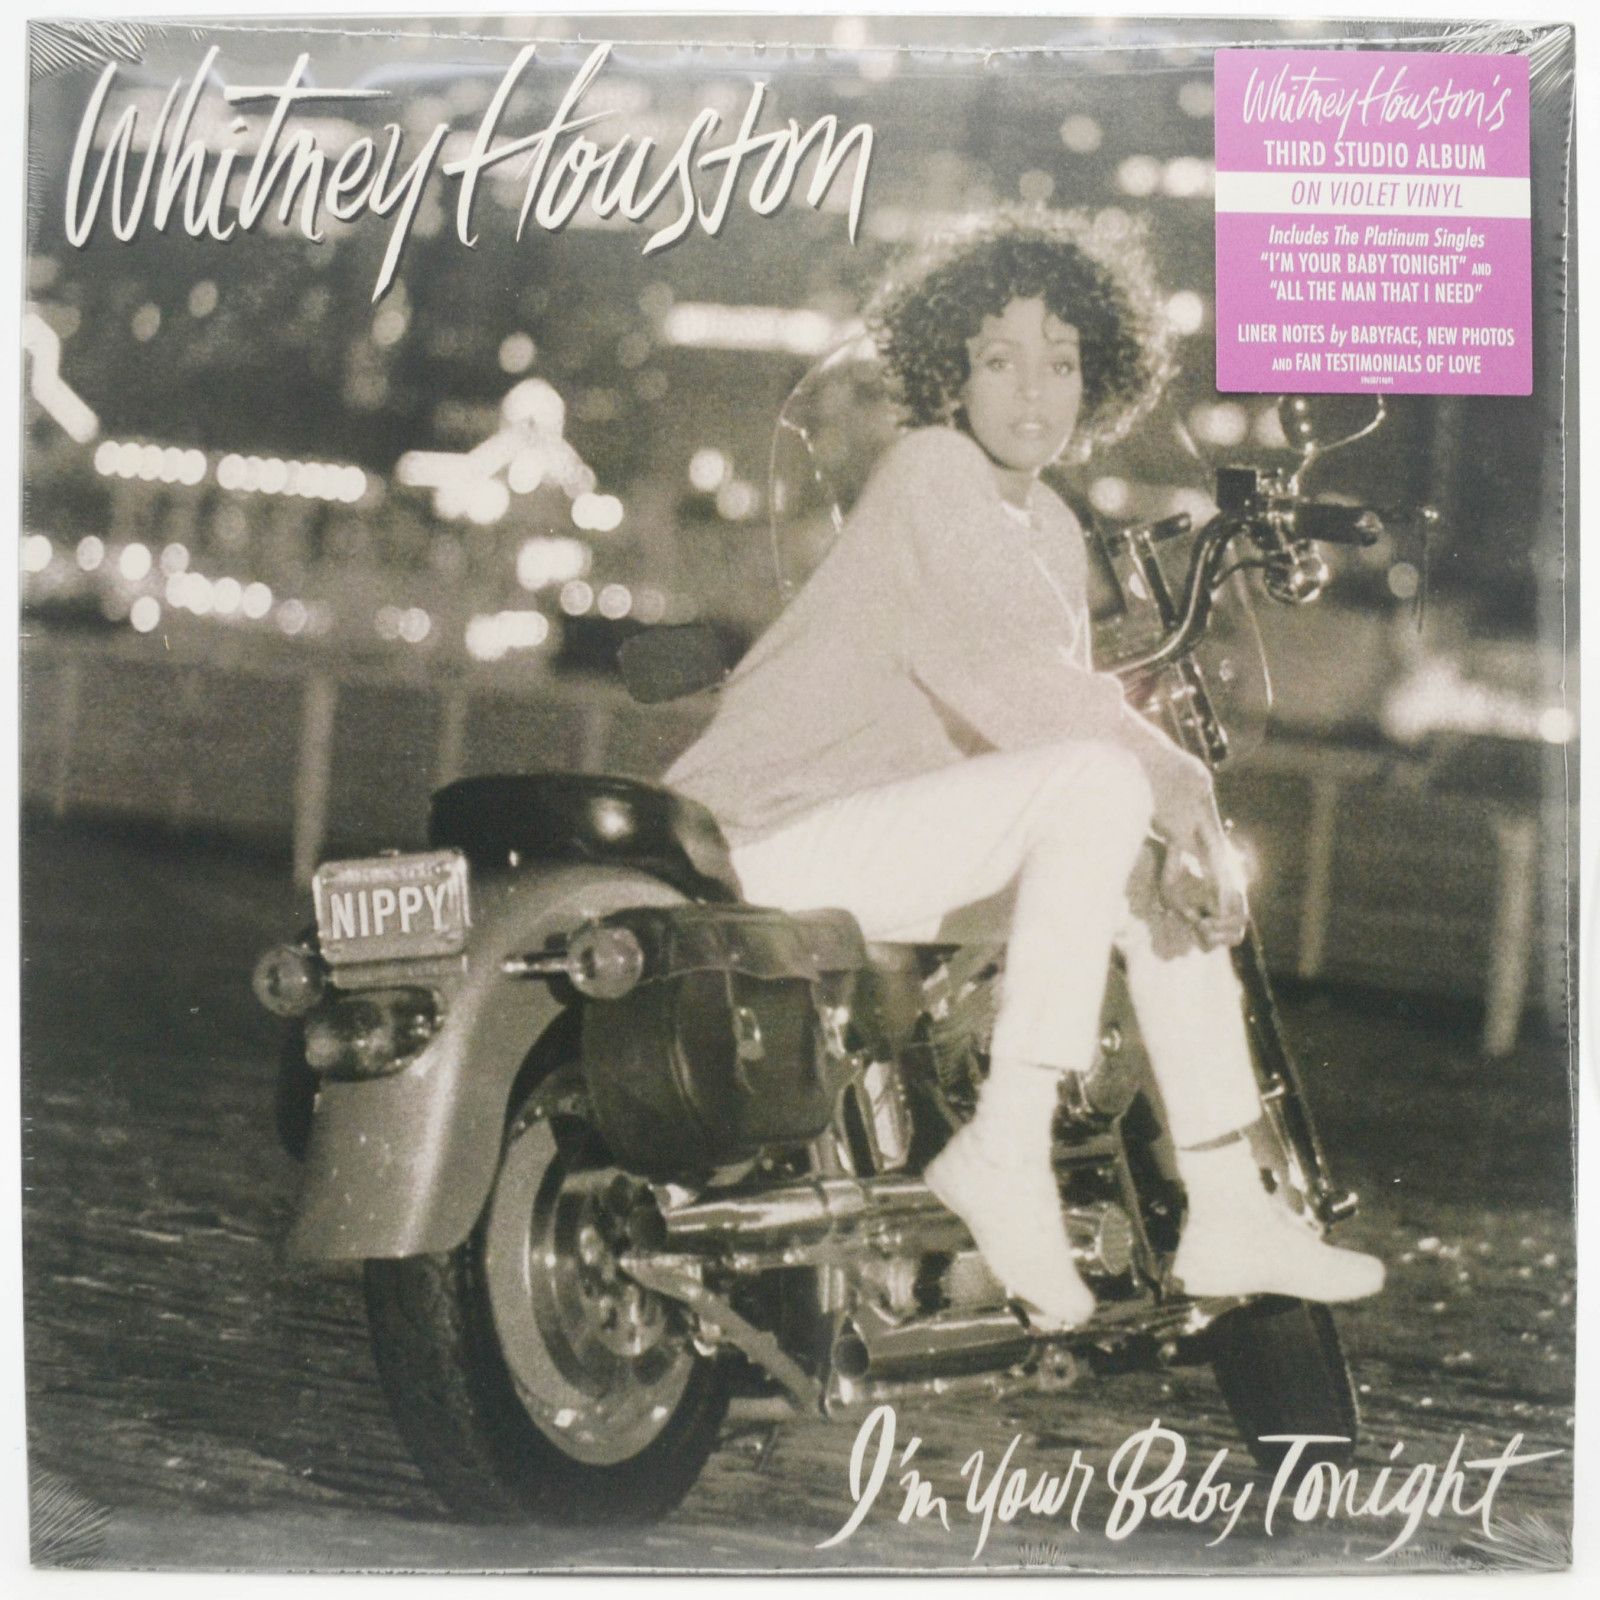 Whitney Houston — I'm Your Baby Tonight, 1990